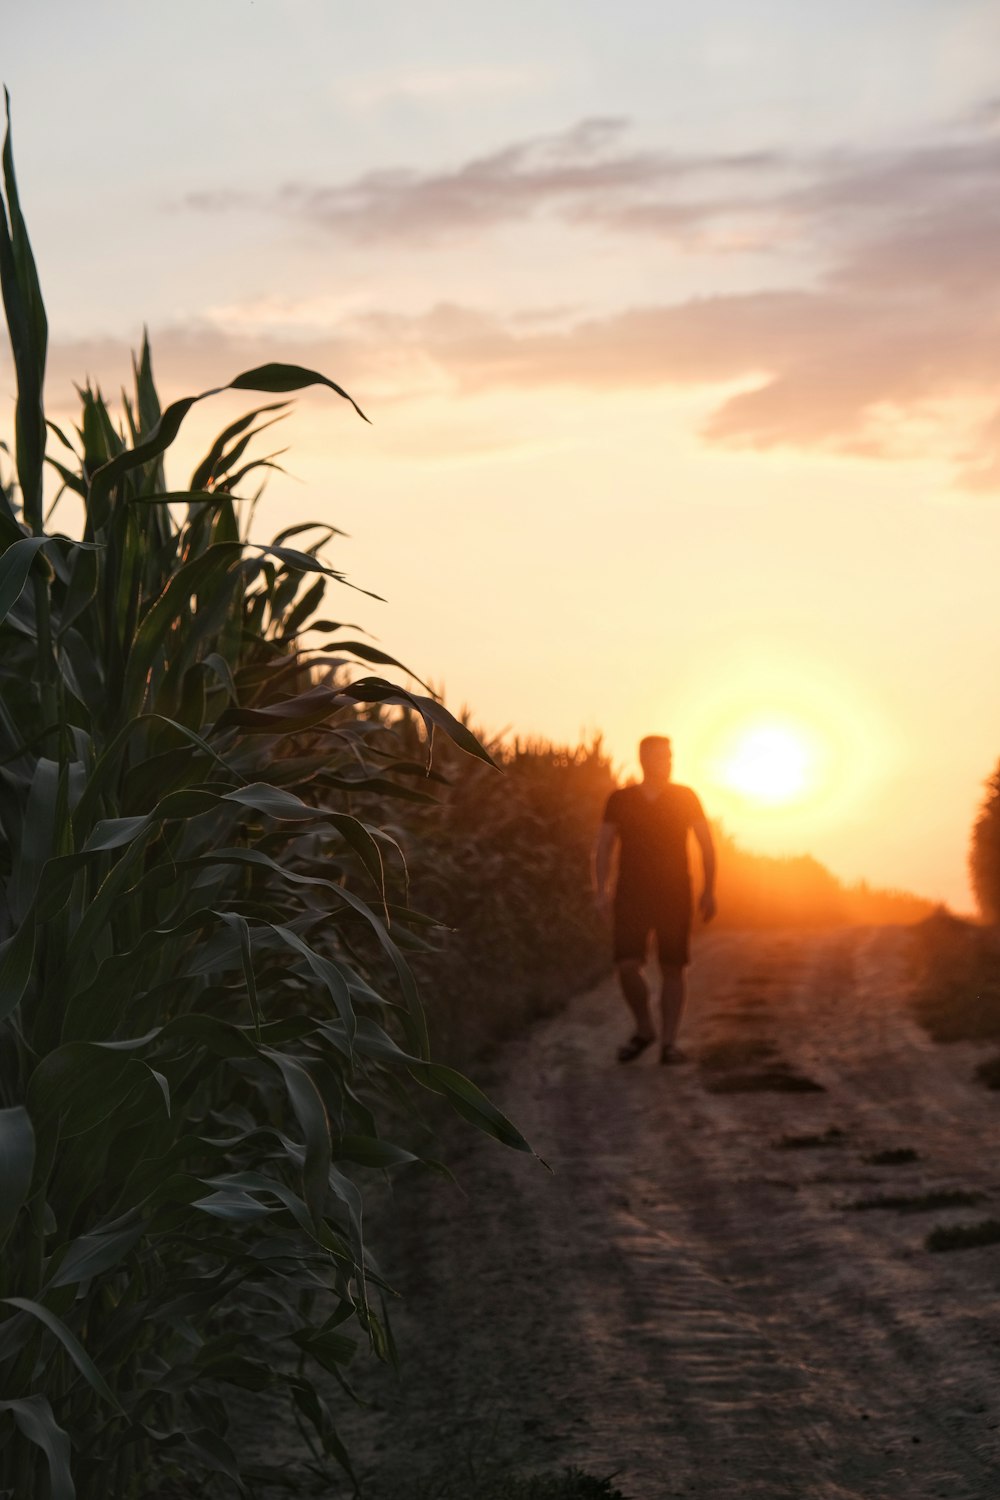 Un homme marchant sur un chemin de terre au coucher du soleil